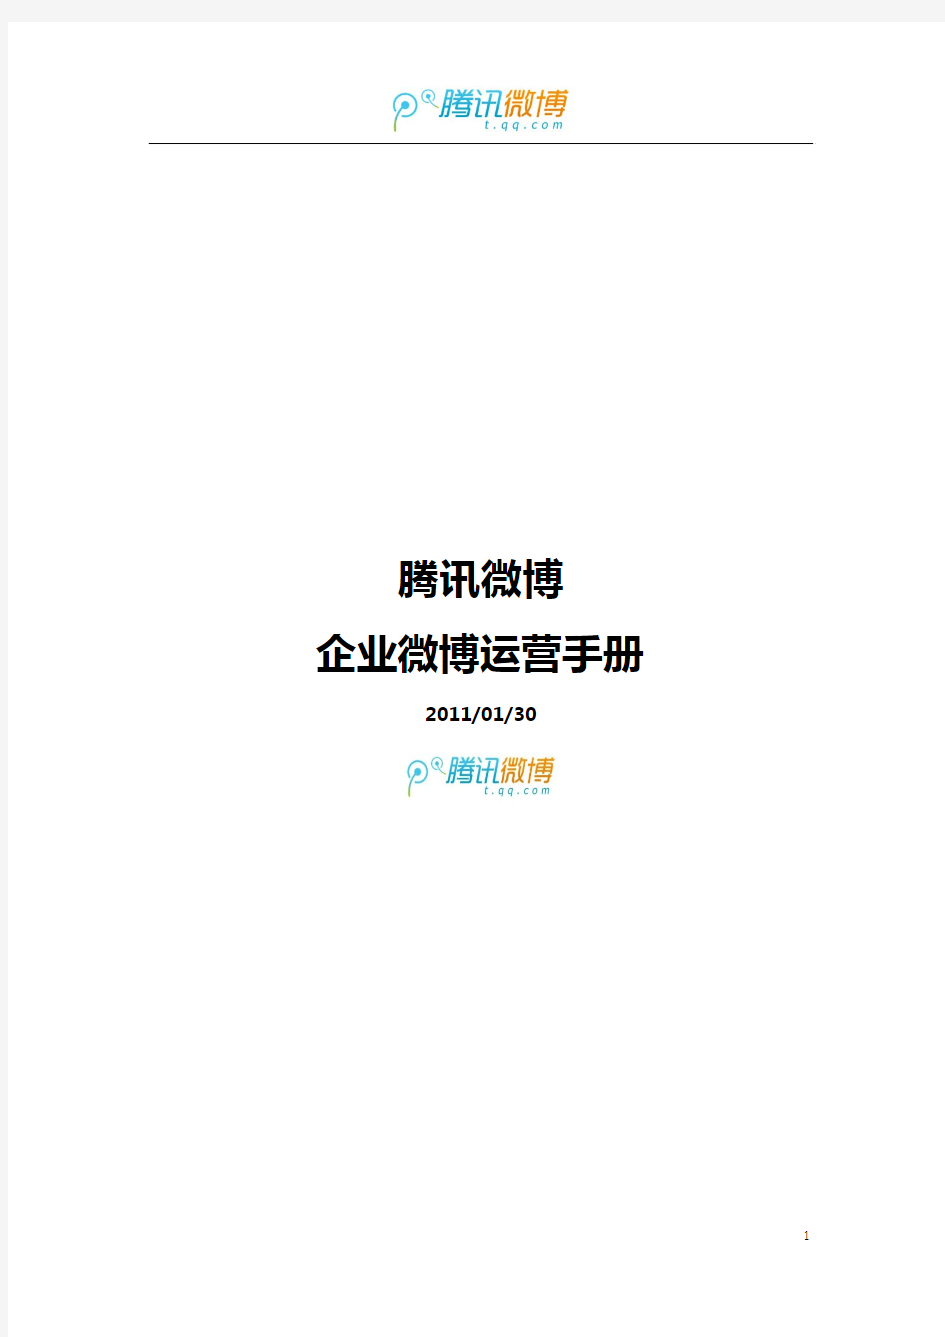 腾讯微博官方运营手册